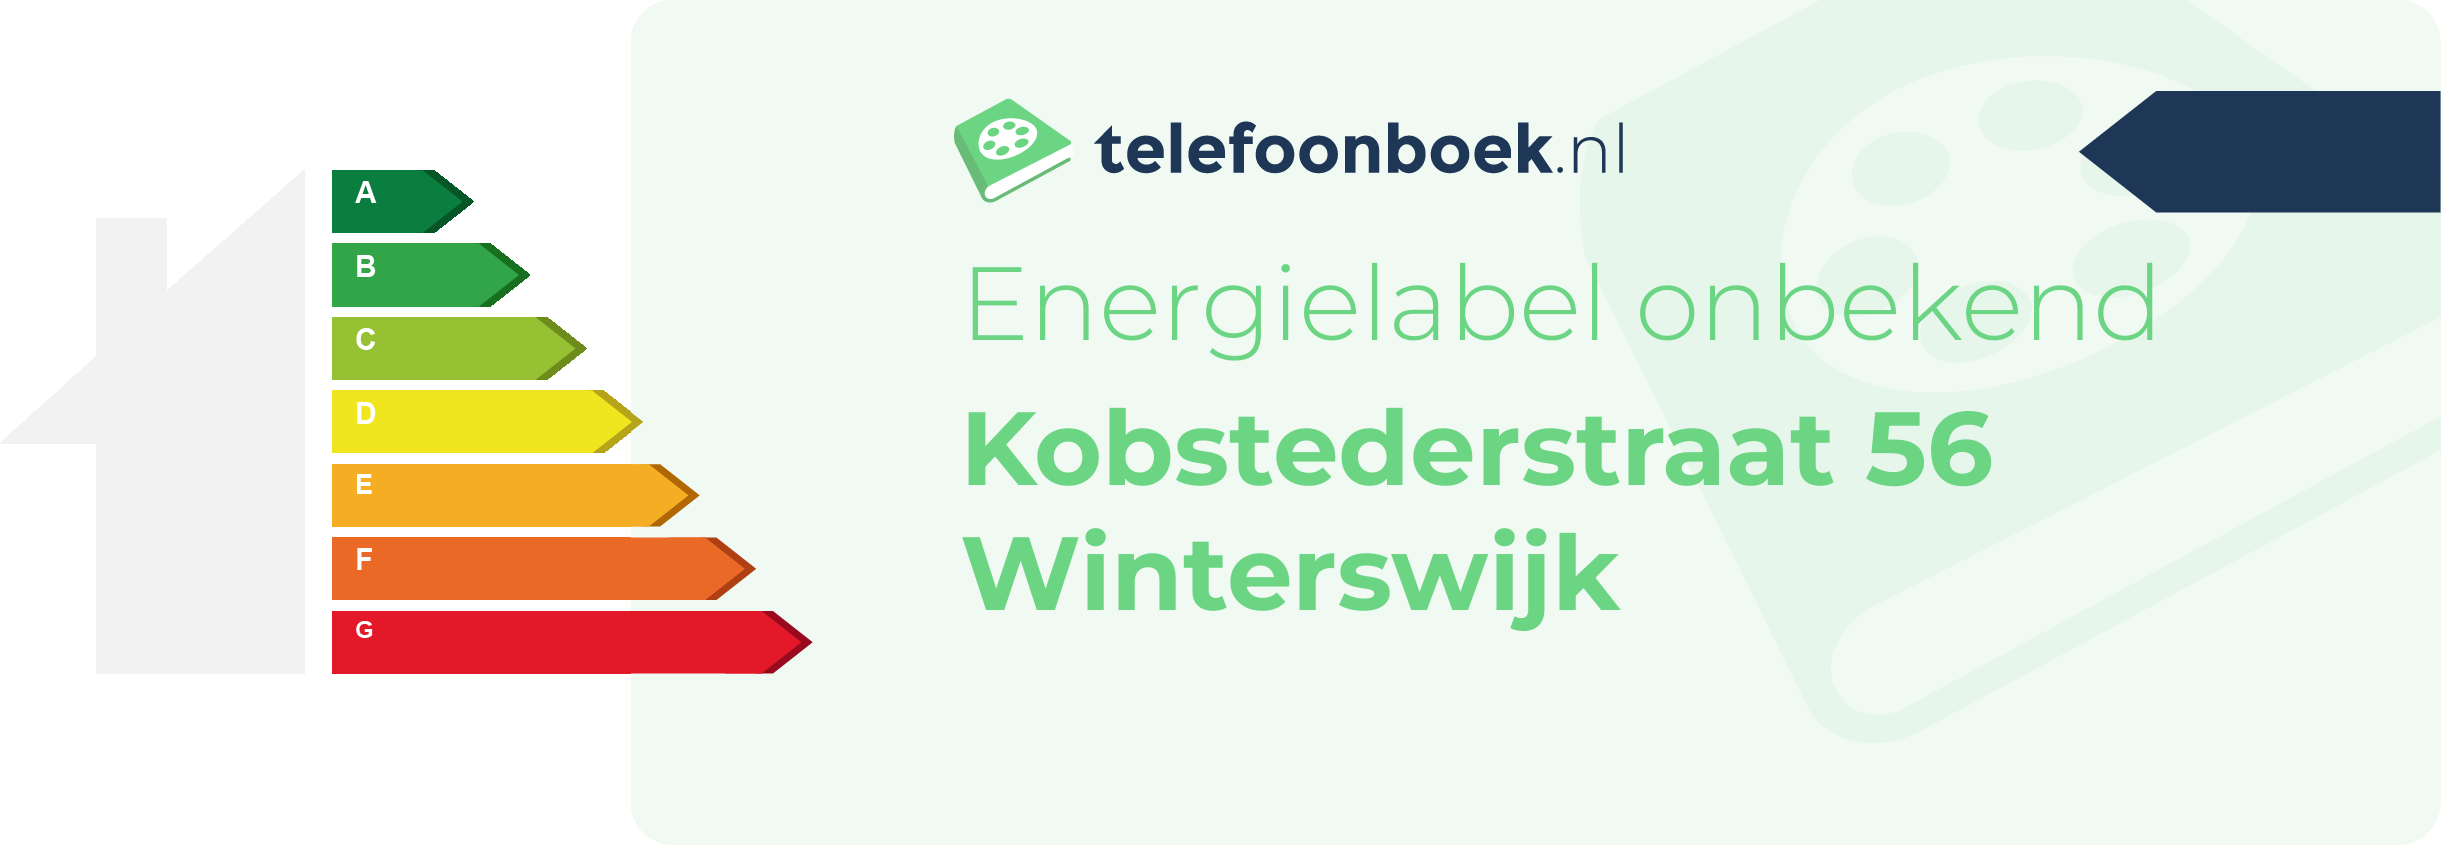 Energielabel Kobstederstraat 56 Winterswijk